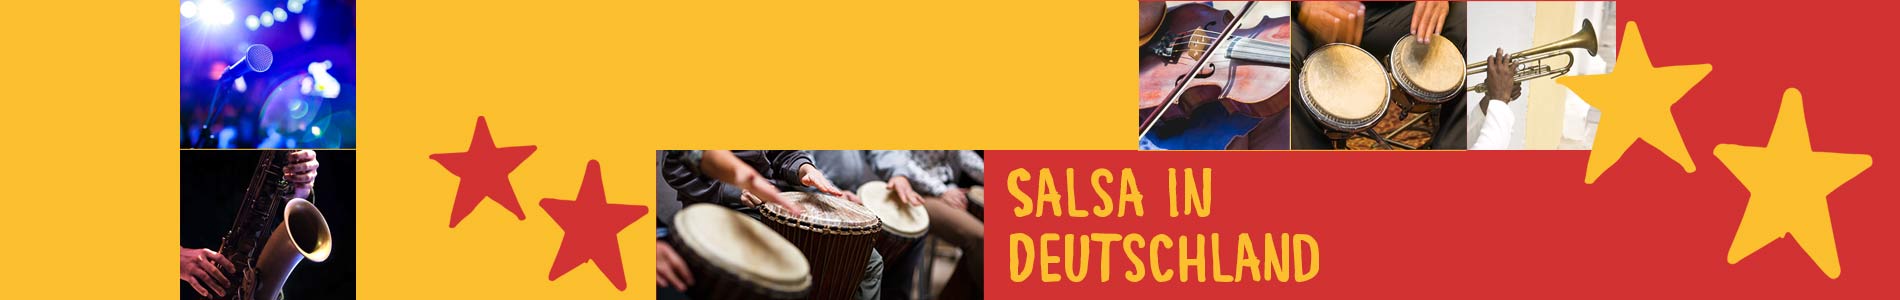 Salsa in Brieskow-Finkenheerd – Salsa lernen und tanzen, Tanzkurse, Partys, Veranstaltungen